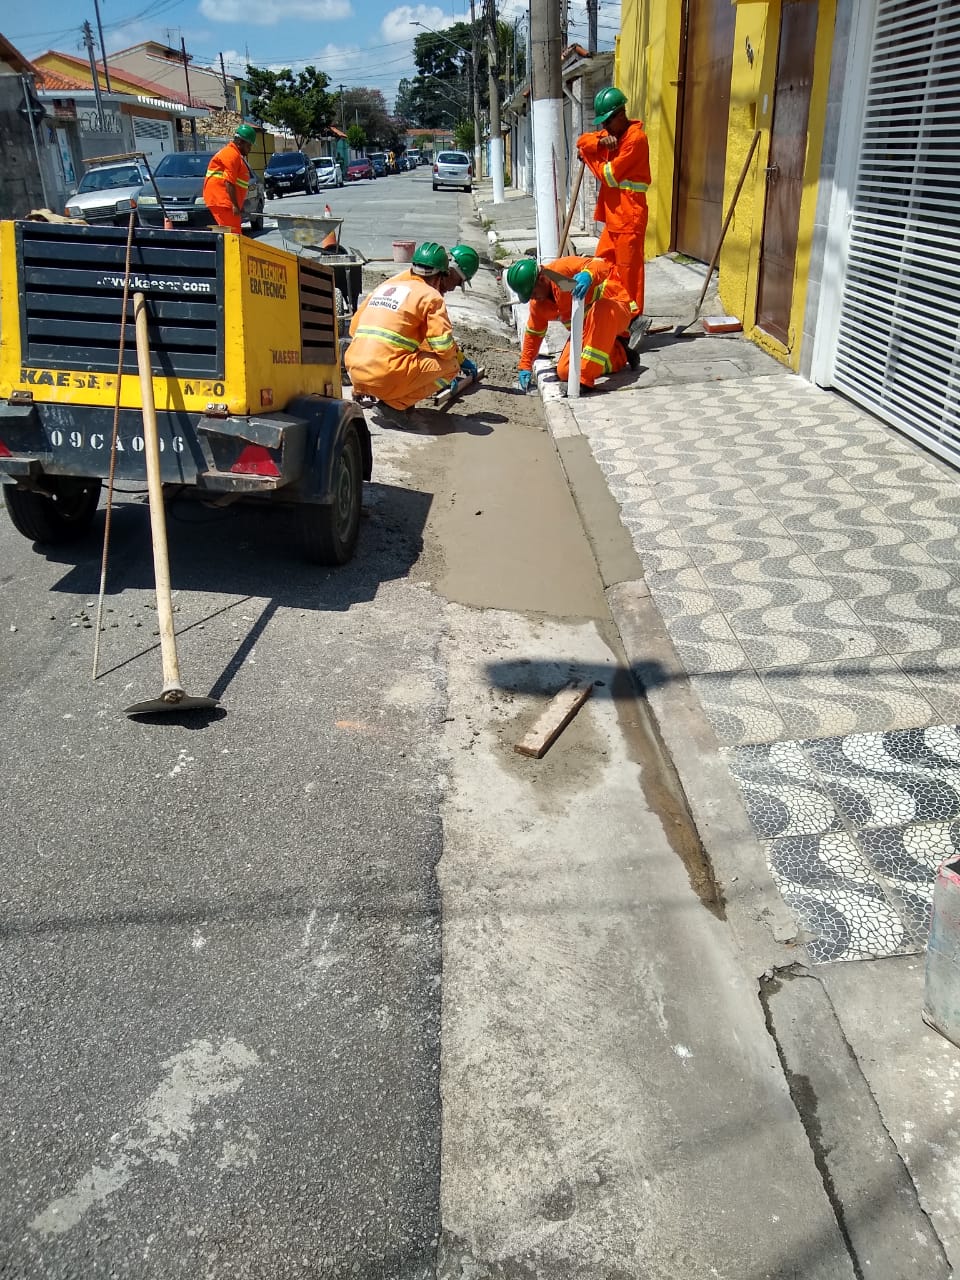 #PraCegoVer - Trabalhadores da Subprefeitura finalizam sarjeta na via. A calçada é feita de ladrilhos imitando pedras portuguesas. Há um compressor amarelo à esquerda.